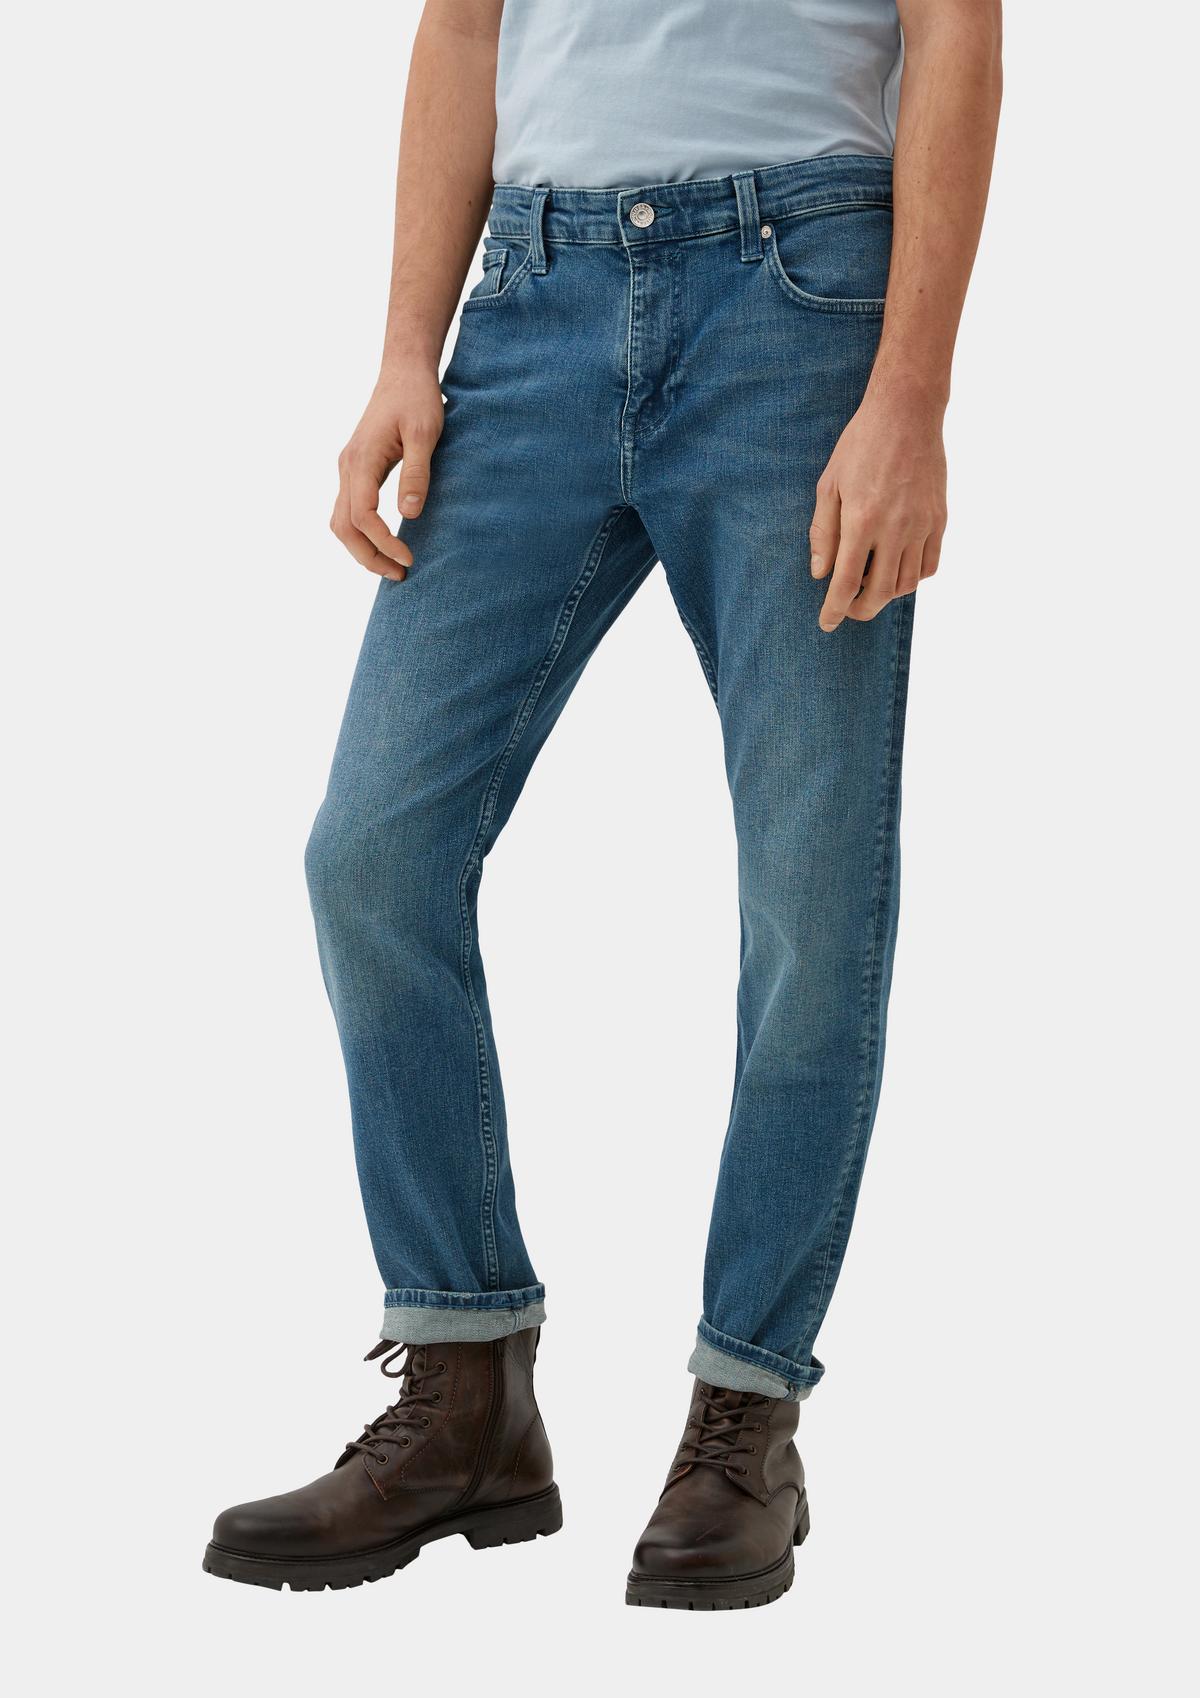 s.Oliver Jeans / Regular Fit / High Rise / Slim Leg